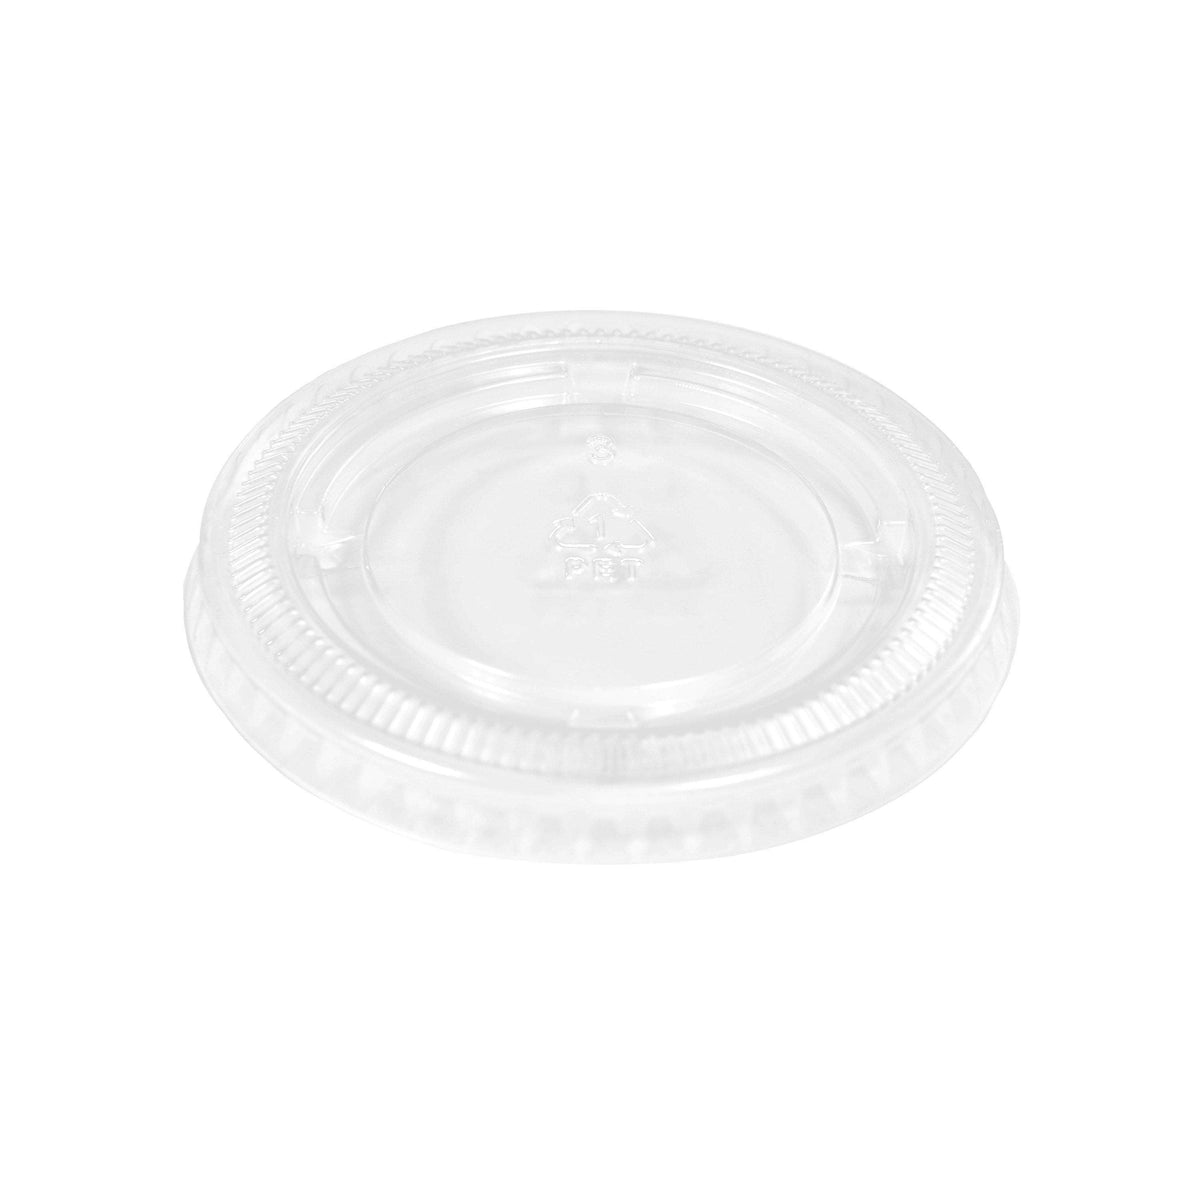 Choice 5.5 oz. Black Plastic Souffle Cup / Portion Cup - 2500/Case